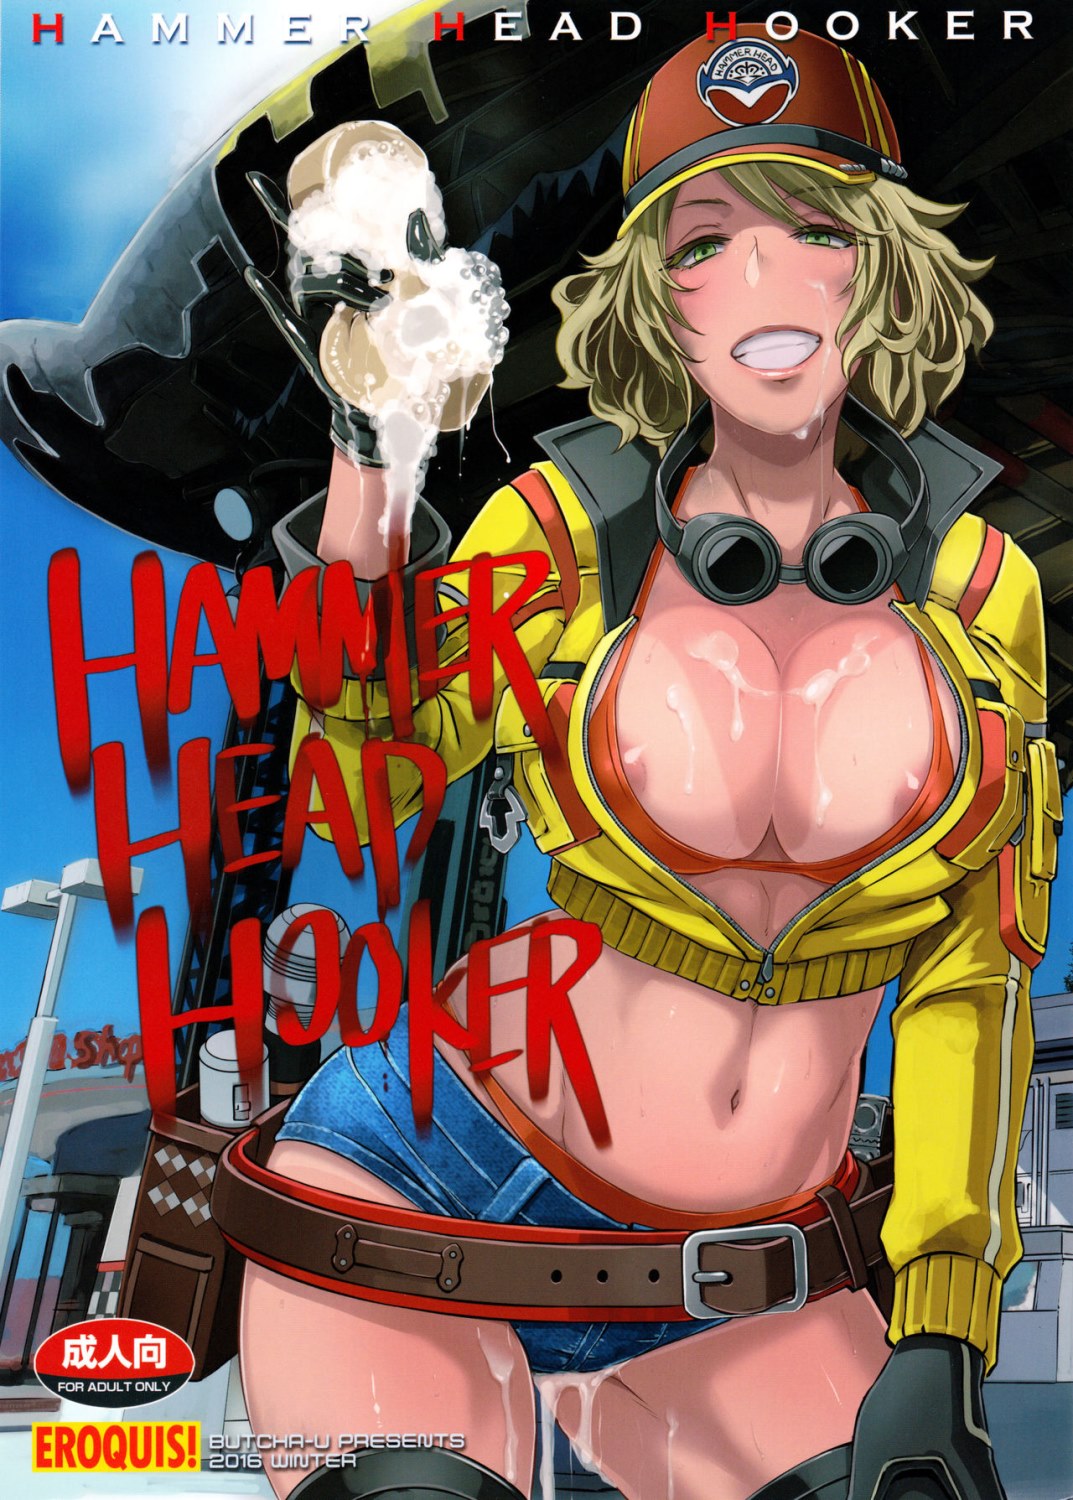 Hooker Cartoon Porn - Hammer Head Hooker- Final Fantasy XV - Porn Cartoon Comics